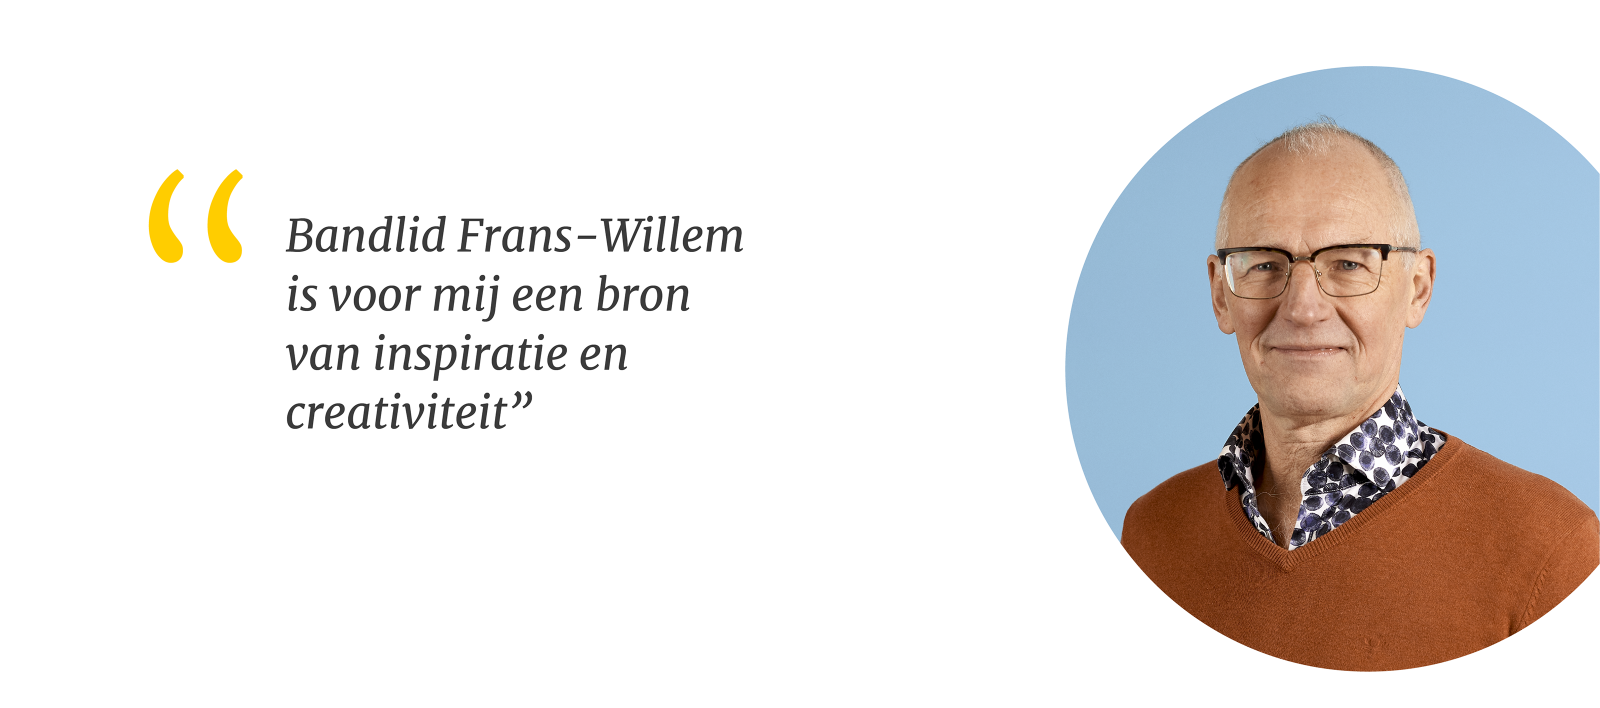 Foto van Frans-Willem met quote: Bandlid Frans-Willem is voor mij een bron van inspiratie en creativiteit